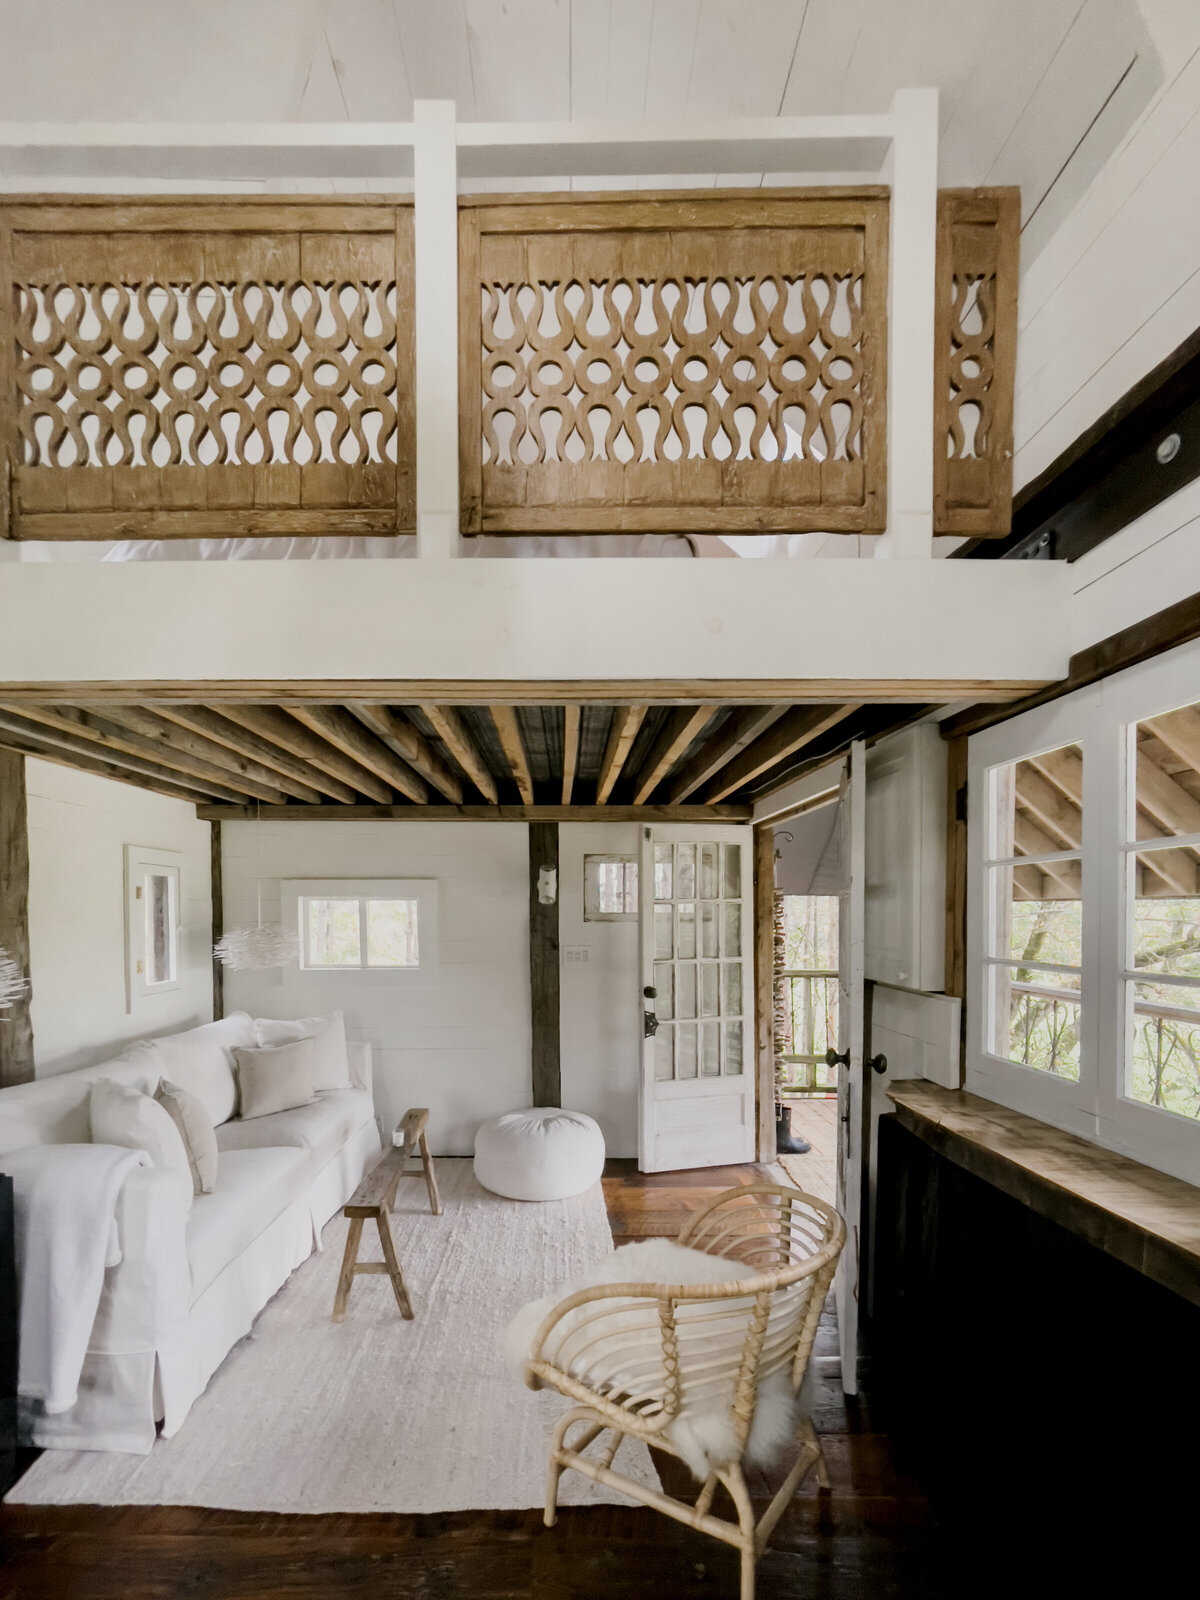 treehouse bedroom loft and livingroom